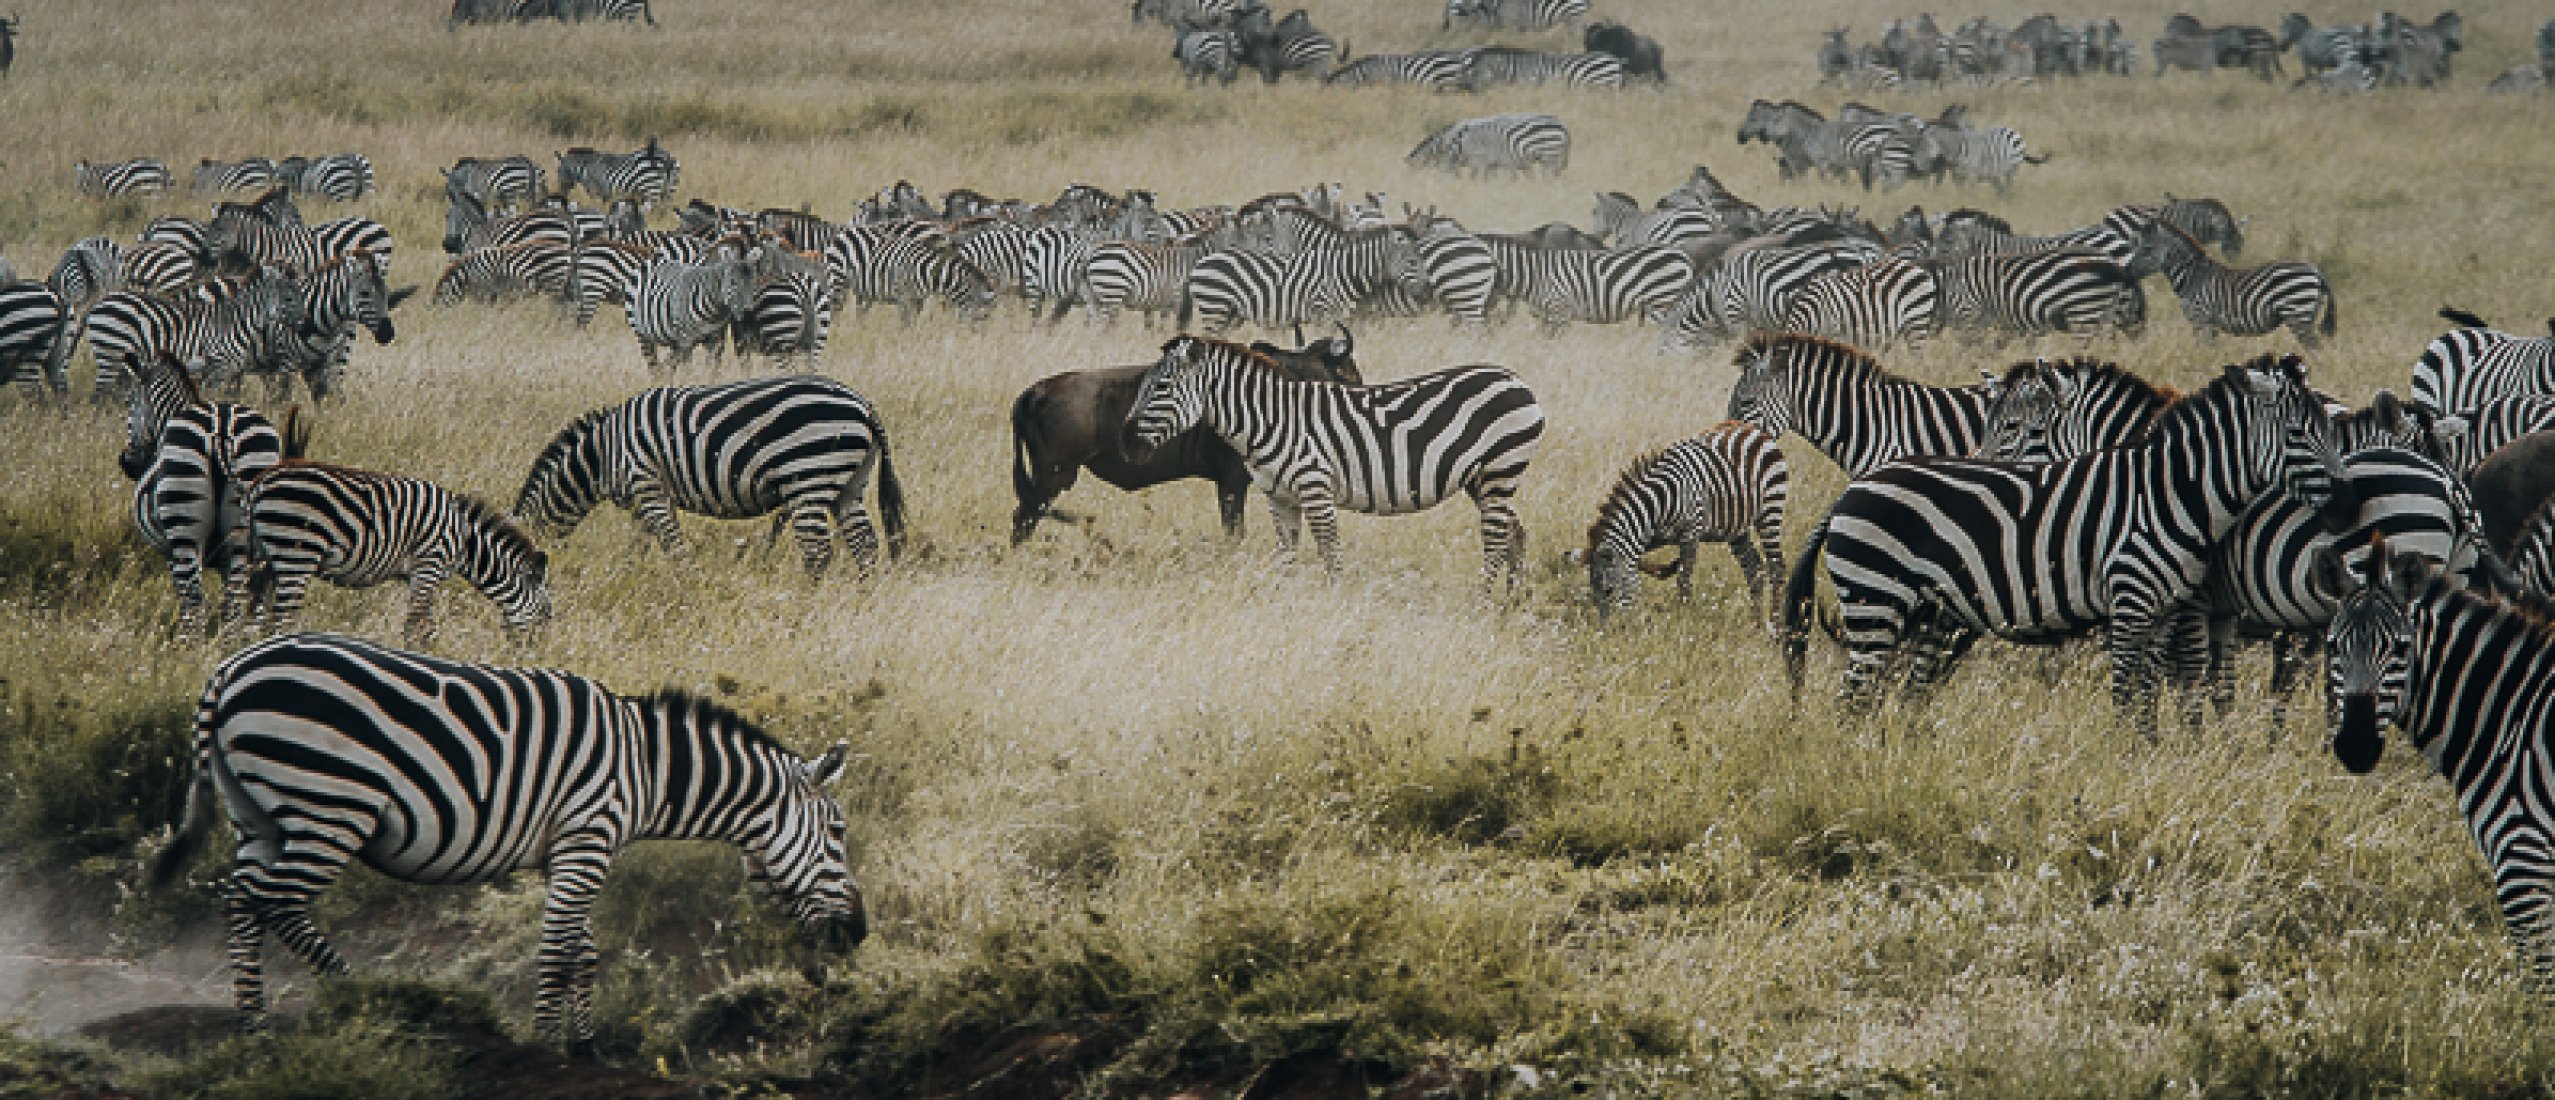 The complete guide for your Serengeti safari in Tanzania